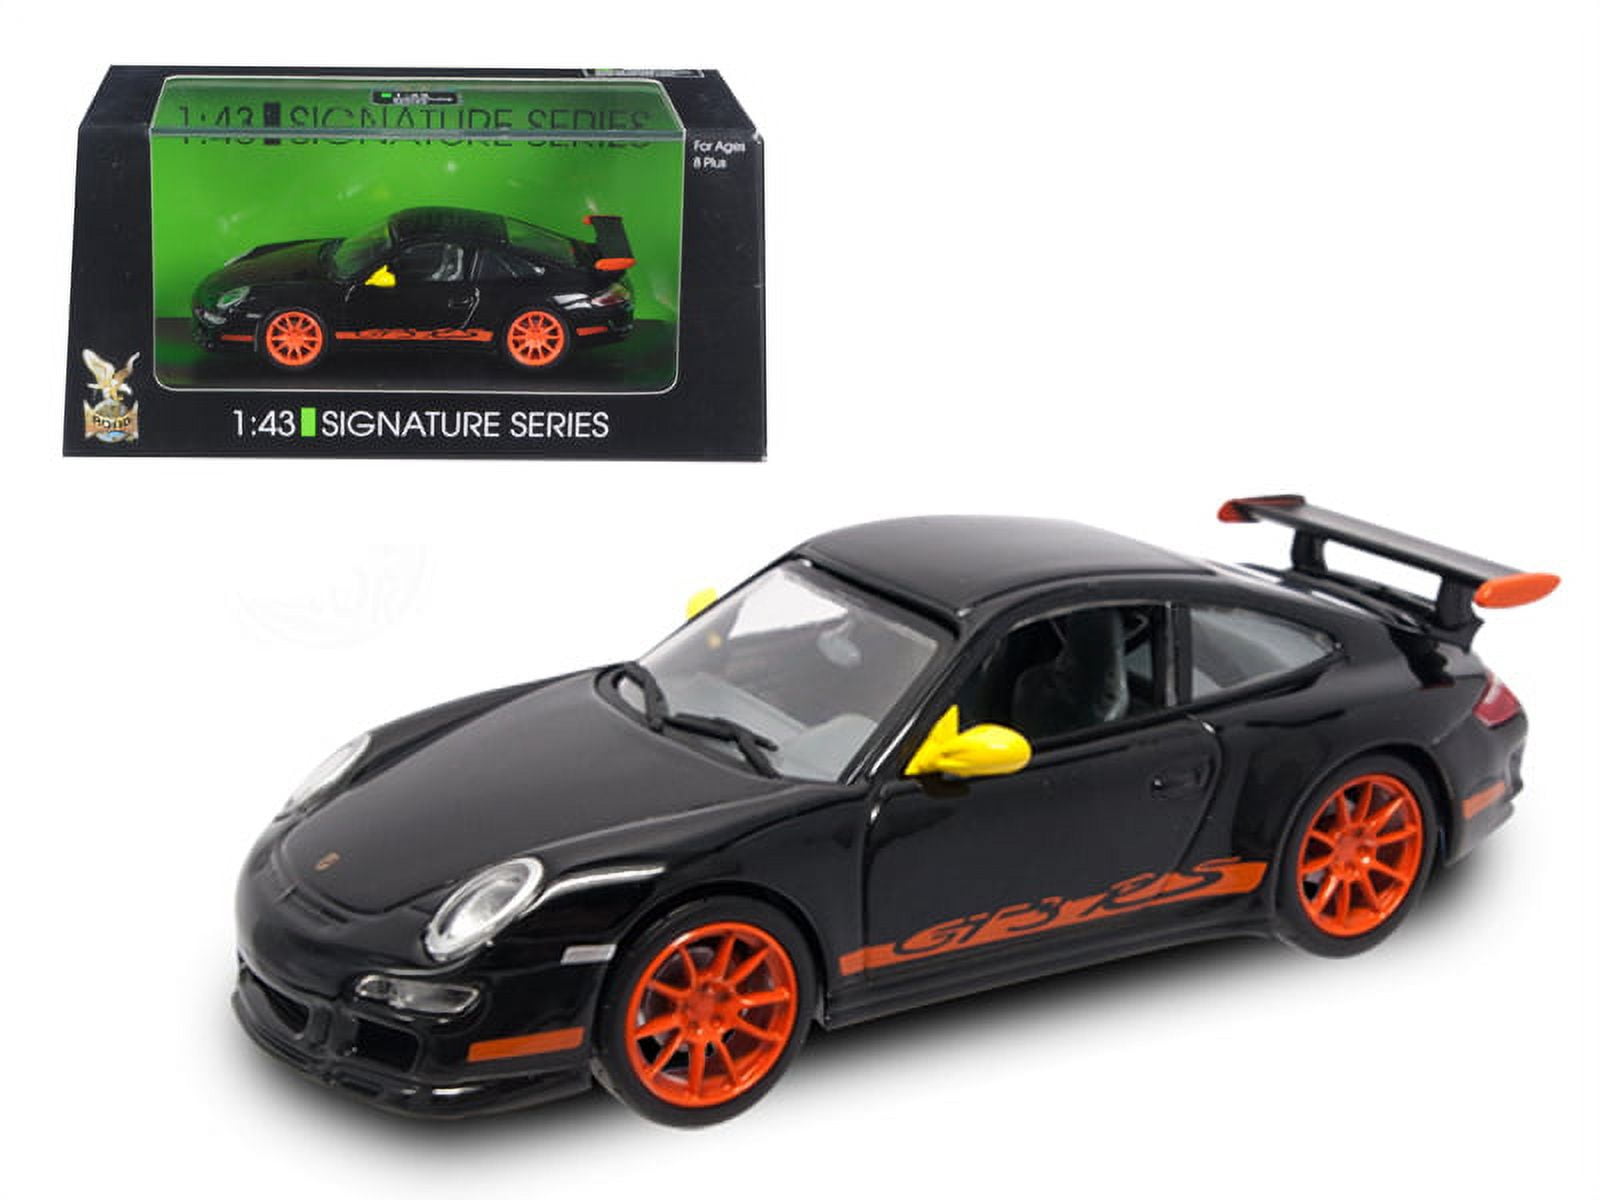 Porsche Modellauto 911 997 GT3 RSR 1:43 WAP0201150D, 26,99 €